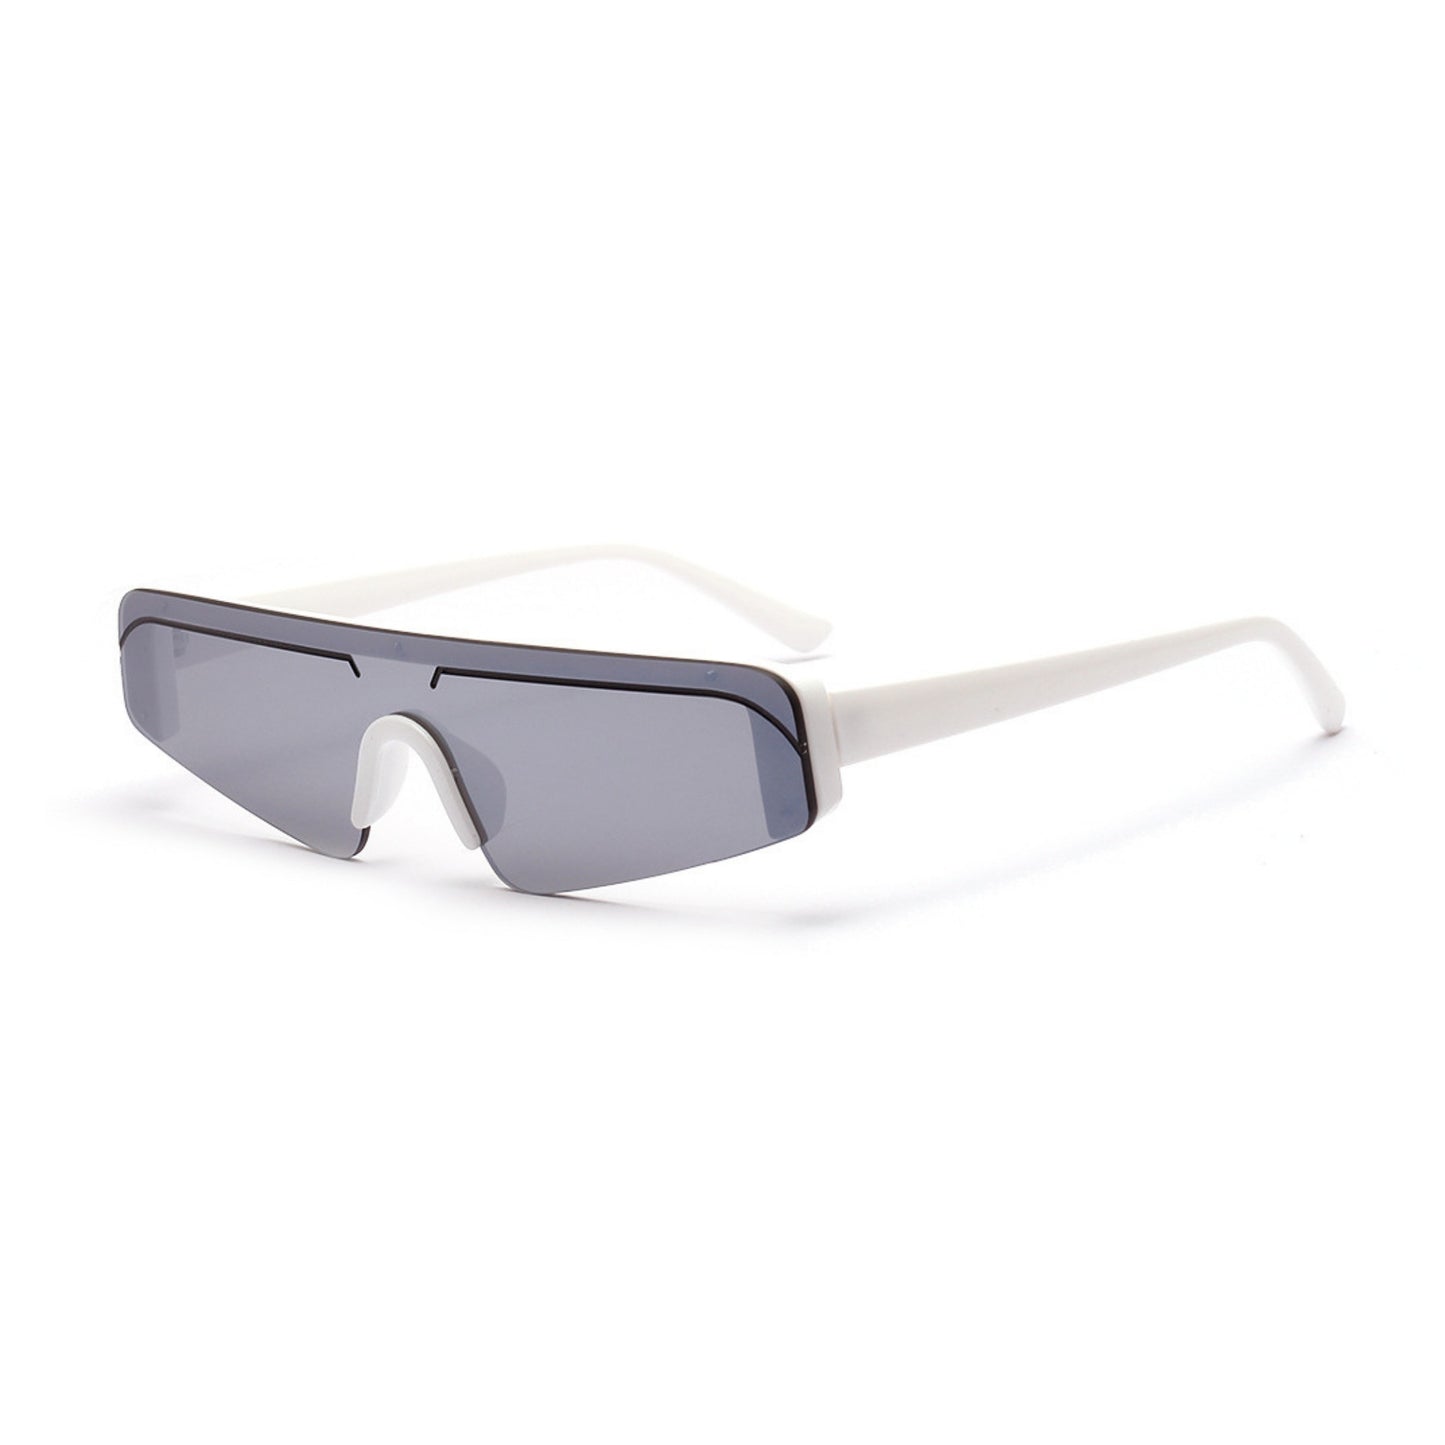 Γυαλιά ηλίου (Μάσκα) Miami της Exposure Sunglasses με προστασία UV400 με άσπρο σκελετό και ασημί φακό. Πλάγια προβολή.